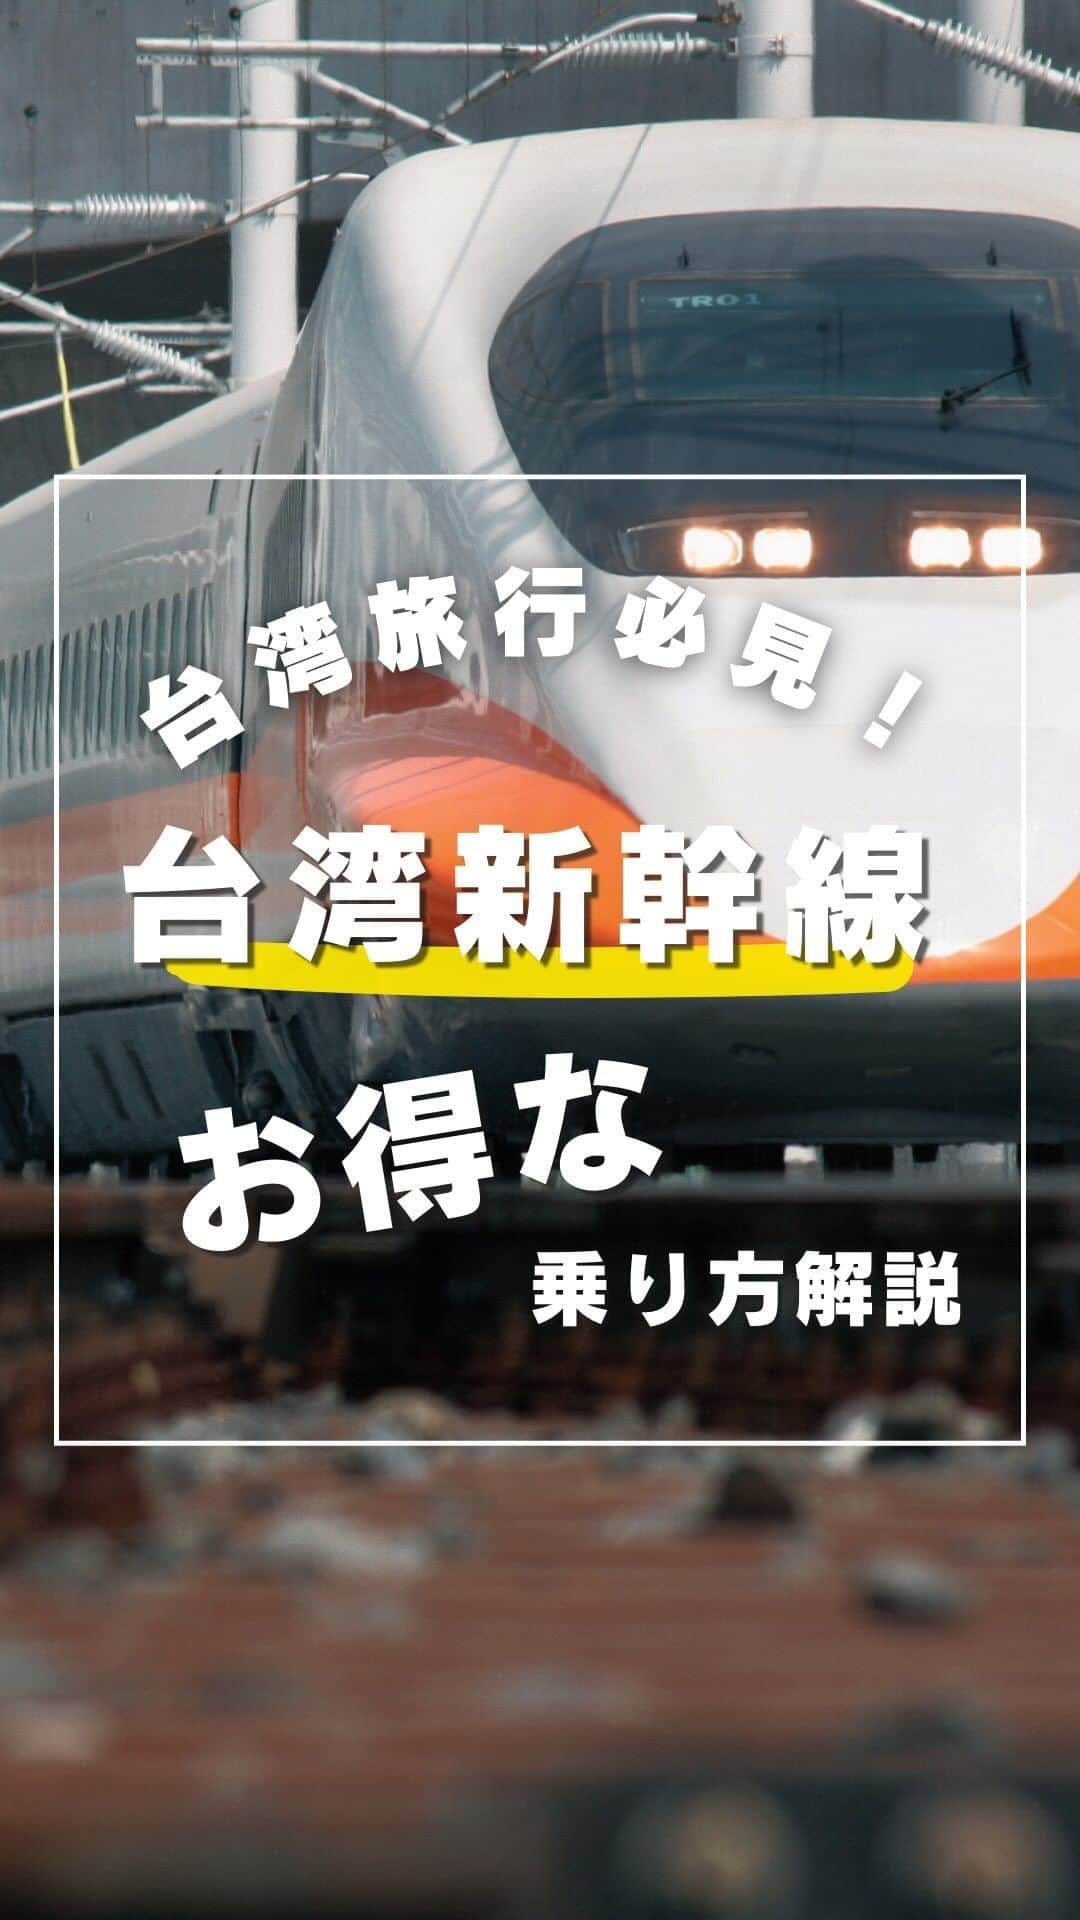 KKdayのインスタグラム：「【日本人ならお得】台湾新幹線のお得な乗り方…😳  KKdayでは世界の旅情報を発信中🌏 👉 @kkdayjp  台湾で地方へ行くのにとても便利なのが台湾新幹線！  正式には、台湾高速鉄道、高鉄と呼ばれています。  今回は、この台湾新幹線のお得なチケット予約購入方法と乗り方をご解説♪  【まずはKKdayでチケット購入】  公式や窓口で購入も可能ですが、KKdayからなら外国人割引が適用され、日本語で簡単お得に購入することができます💕  ／ KKdayではいろんな台湾商品も販売中♪ ＼  「KKday 台湾新幹線」 と検索して台湾新幹線の購入ページへ。  出発地と行き先を入力して購入！ KKdayならPayPayでも払えるよ🥳  【公式ページから座席を予約】  購入したら、届いたメールかアプリの購入履歴ページから台湾高速鉄道のページへ移動。  そこから、「Manage」を選んで購入情報を入力していくよ。  英語になるから、わからなければ翻訳を使って進めていこう。  動画の通りに進めていくと、日付と時間を選べる画面になるから、乗りたい日付を選択しよう。  ＊直前だと空いてないこともあるから早めに予約がオススメ。  予約できたら登録の番号を念の為、画面スクショしておくといいかも！  【窓口でチケット受け取り】  高鉄の駅に行って窓口を探そう！ 當日票，預售票って書かれてる列に並ぼう。  予約画面とパスポートを見せればチケットを発行してくれる。  【改札口とプラットホームを探そう】  チケットを改札に通して、乗る電車のプラットホームで電車を待とう。 余裕を持って10分前にはついておくこと！  自分の席を探して快適な台湾旅へ！  ーーーーーーー✂︎ーーーーーーー  ✈️次回の台湾旅行では、ぜひ台湾新幹線に乗ってみてね！  📩わからないことがあればコメントで聞いてください♪  ーーーーーーー✂︎ーーーーーーー  保存して、次回の海外旅行に役立ててもらえると嬉しいです🥳  ーーーーーーー✂︎ーーーーーーー  ／ 旅先で撮った写真に「#kkday旅」を付けてシェアしてください💓 ステキなお写真はKKday公式アカウントでご紹介します♪ ＼  *動画はイメージとなります。 最新の情報は購入ページでご確認ください。  #旅行好きな人と繋がりたい #旅スタグラム #旅好き #女子旅 #海外女子旅 #海外旅行 #世界一周 #一人旅 #台湾旅 #台湾 #台湾旅行 #台湾好き #台湾好きな人と繋がたりたい #台湾大好き #台湾観光」